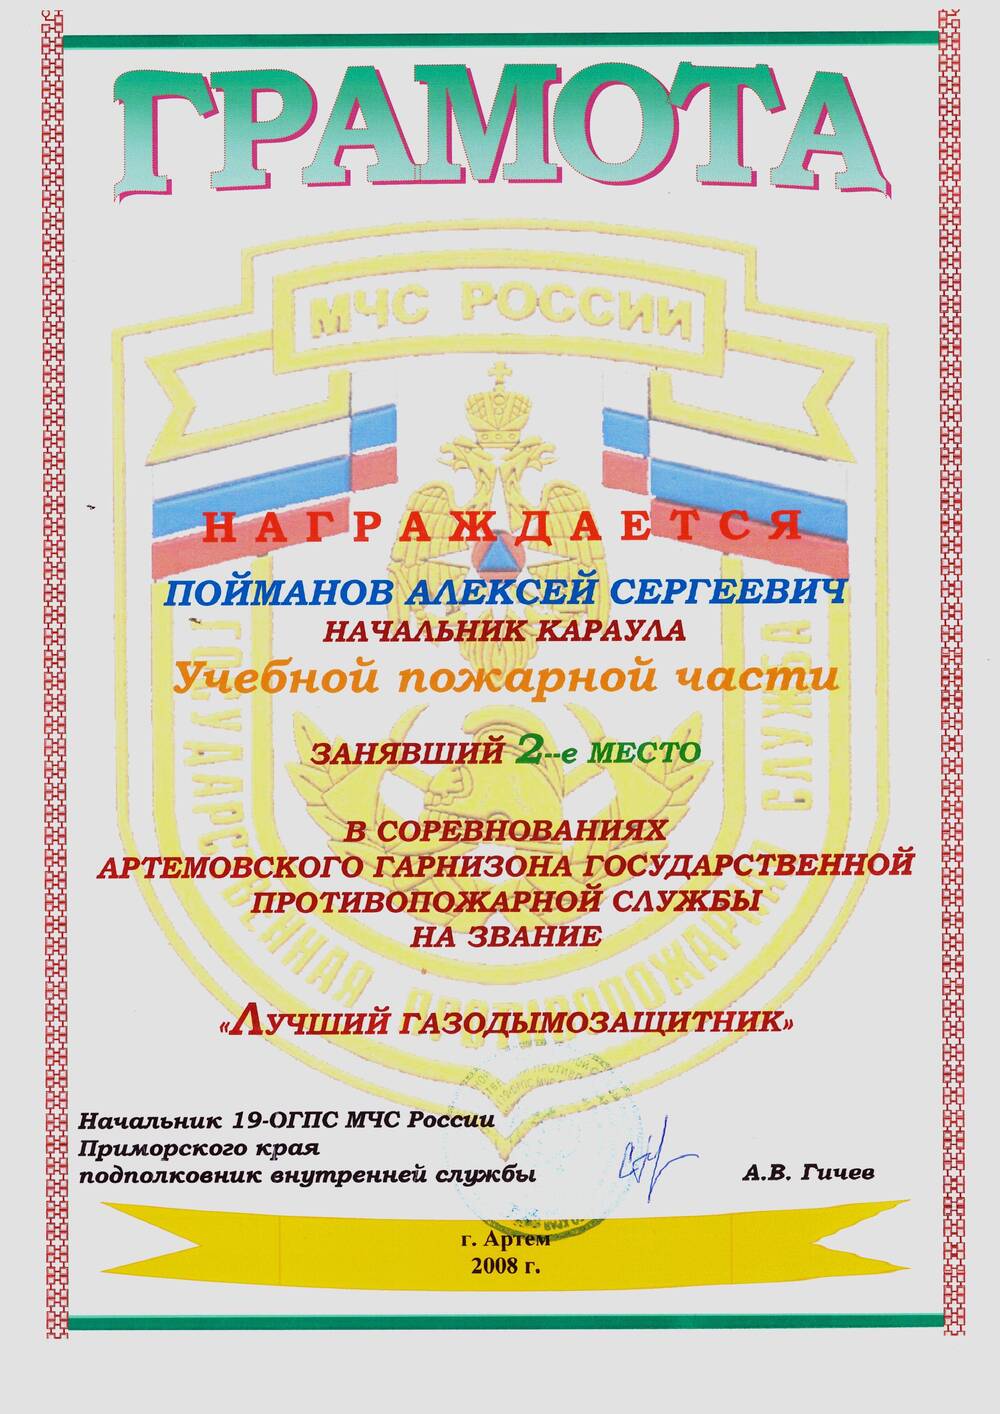 Грамота учебного центра ФПС за 2 место в соревнованиях Артёмовского гарнизона ГПС на звание «Лучший газодымозащитник»